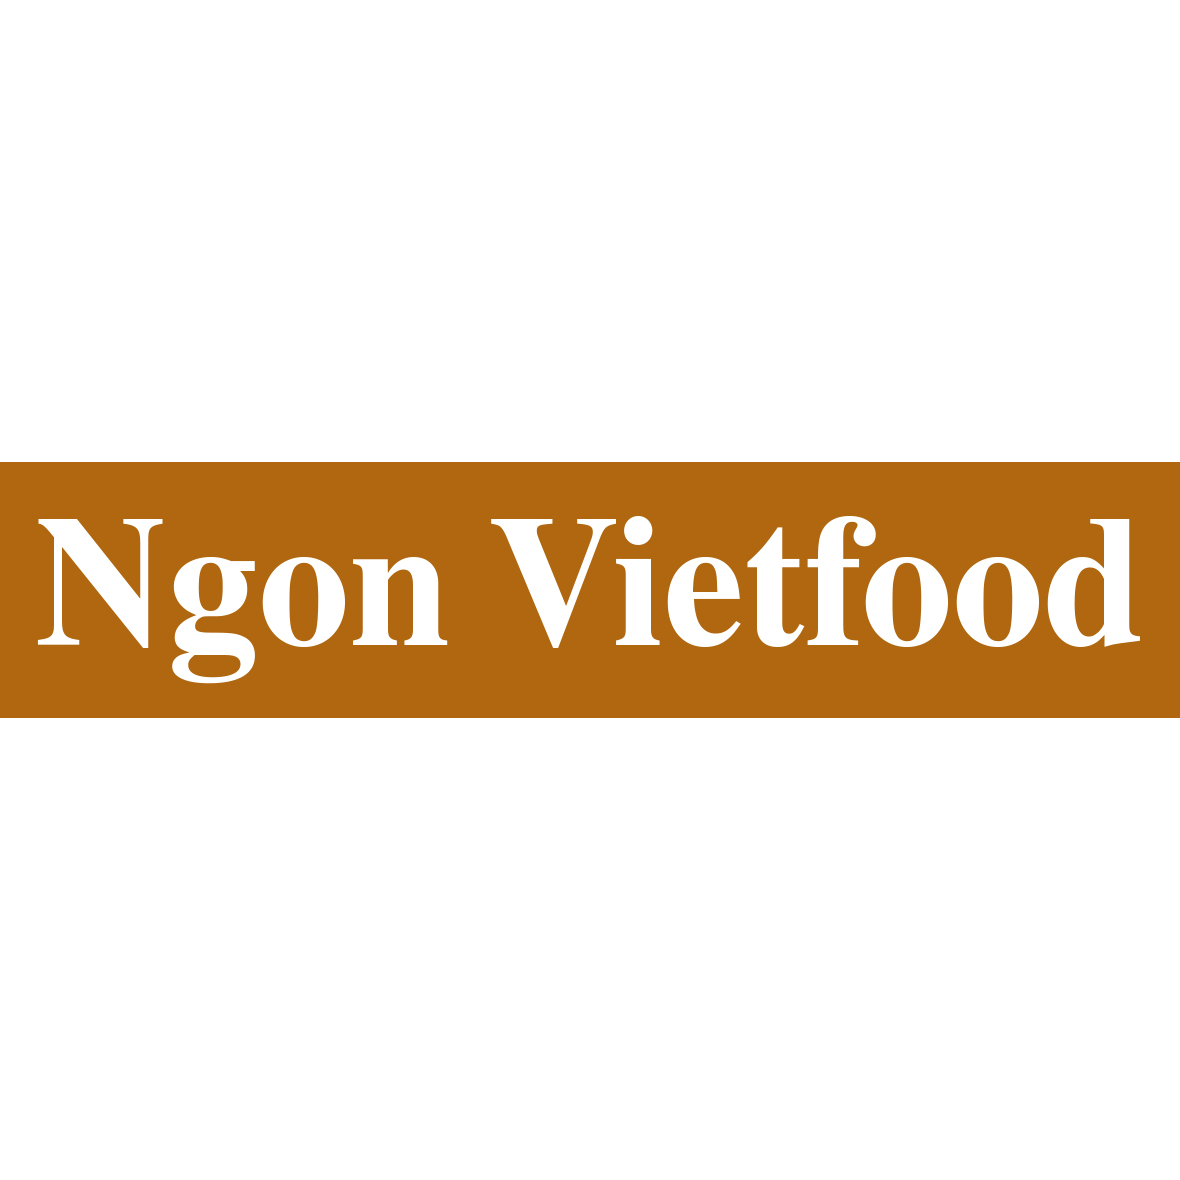 Ngon Vietfood in Essen - Logo